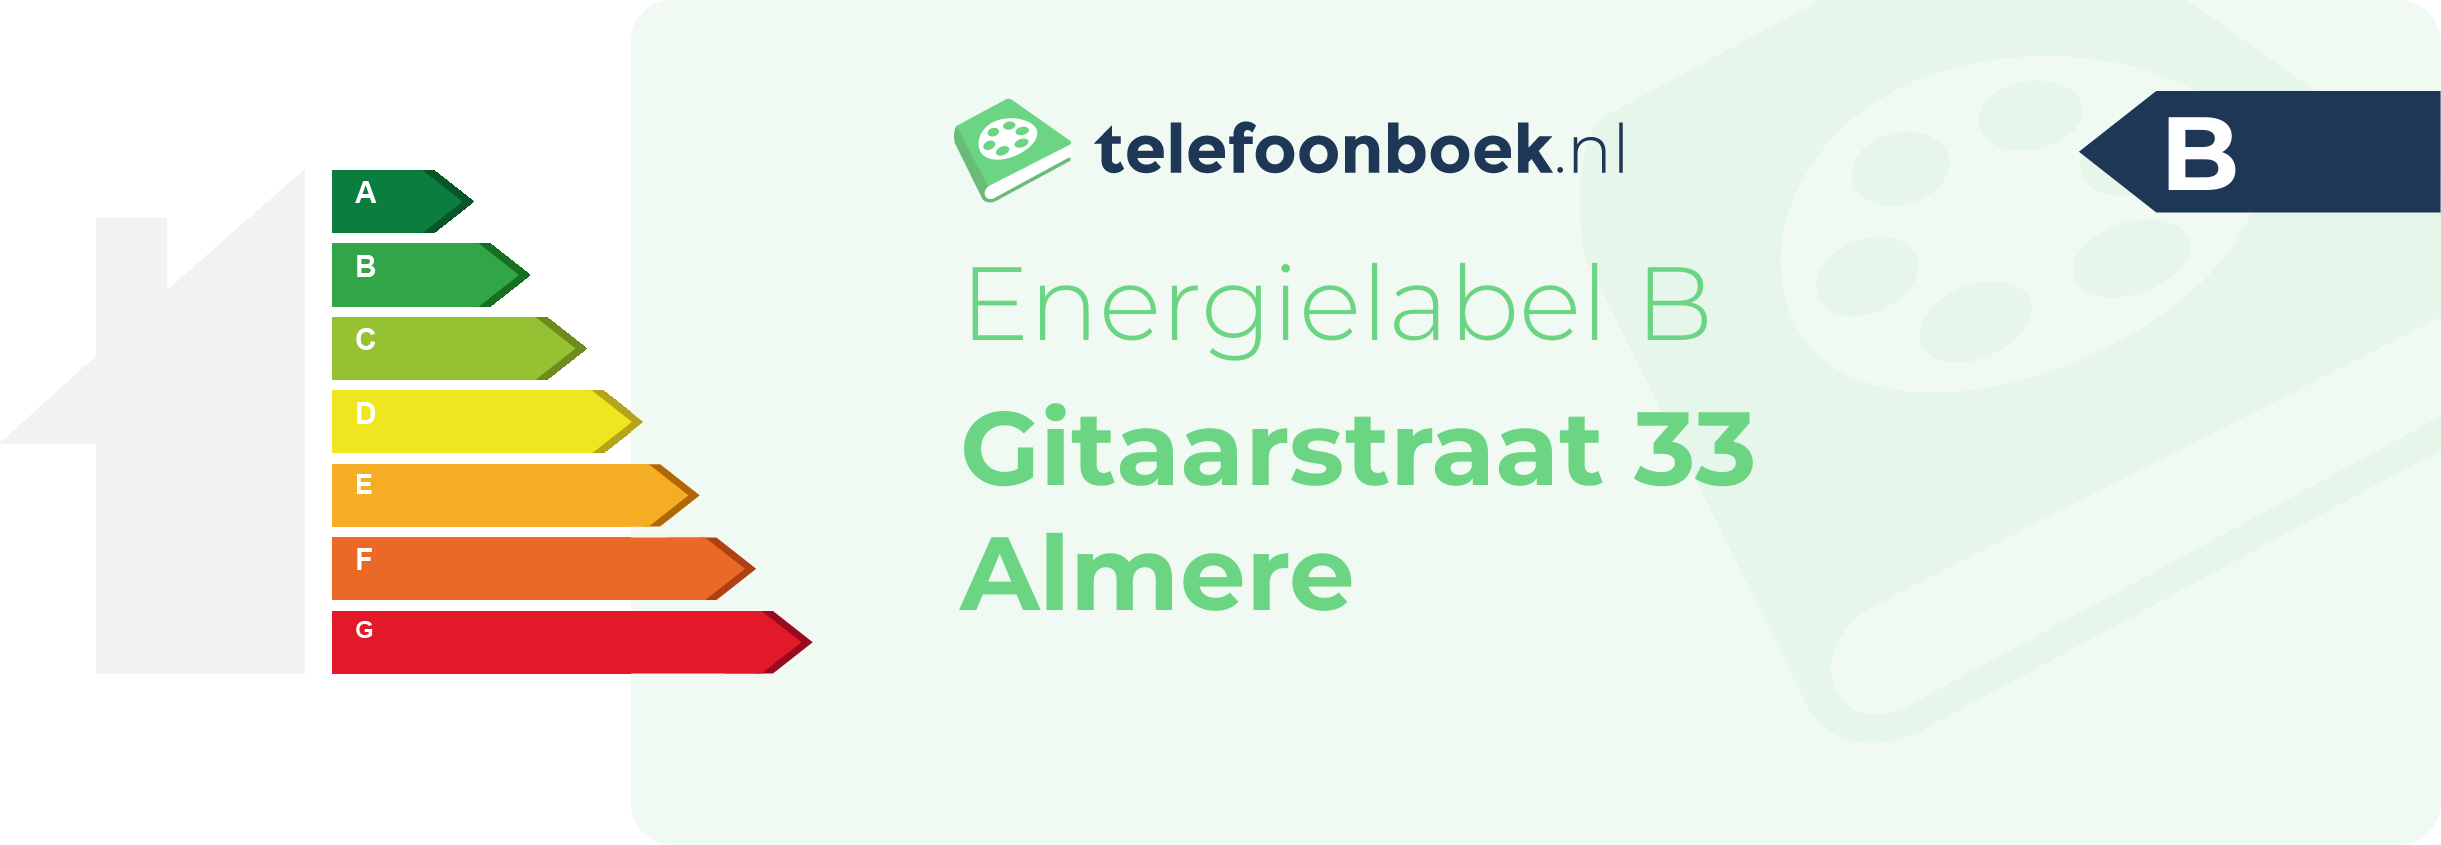 Energielabel Gitaarstraat 33 Almere